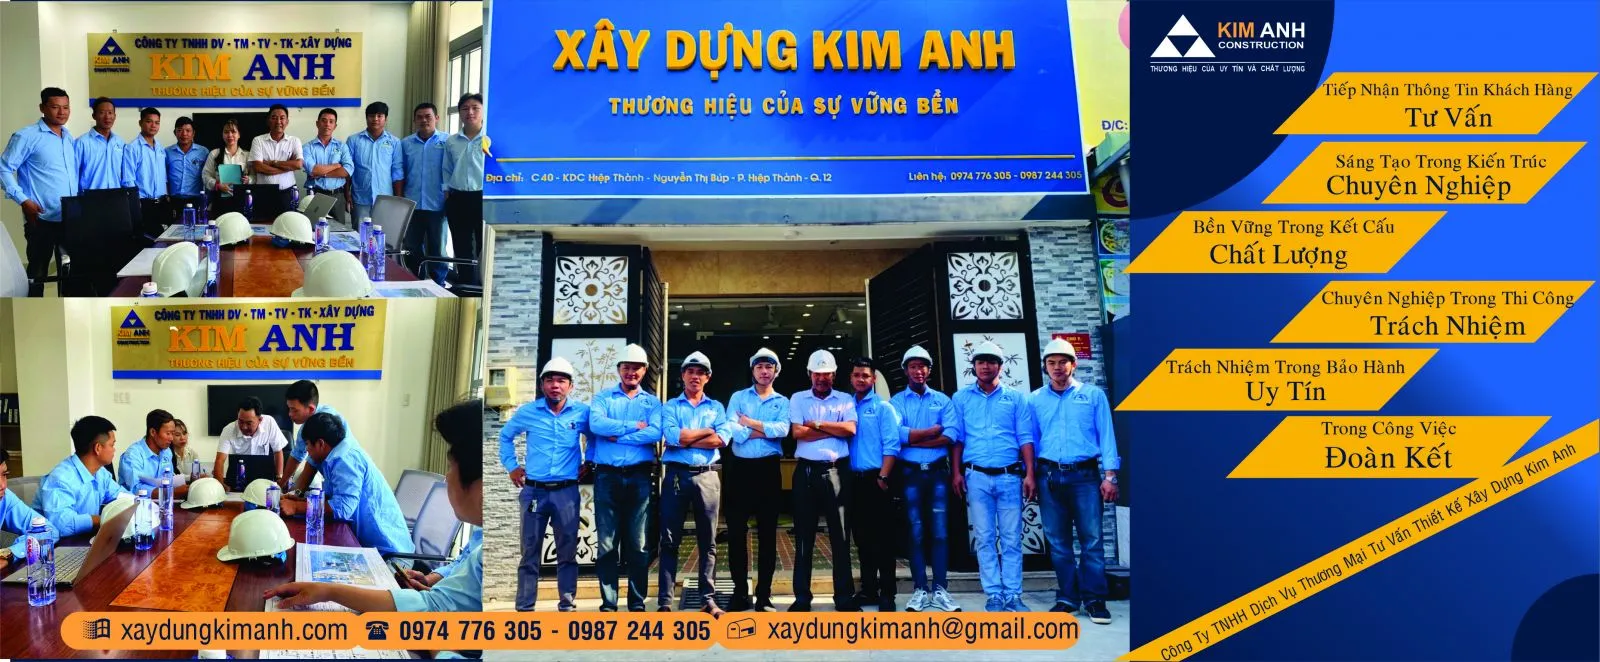 Xây Dựng Kim Anh: Công ty xây dựng nhà Quận Bình Thạnh